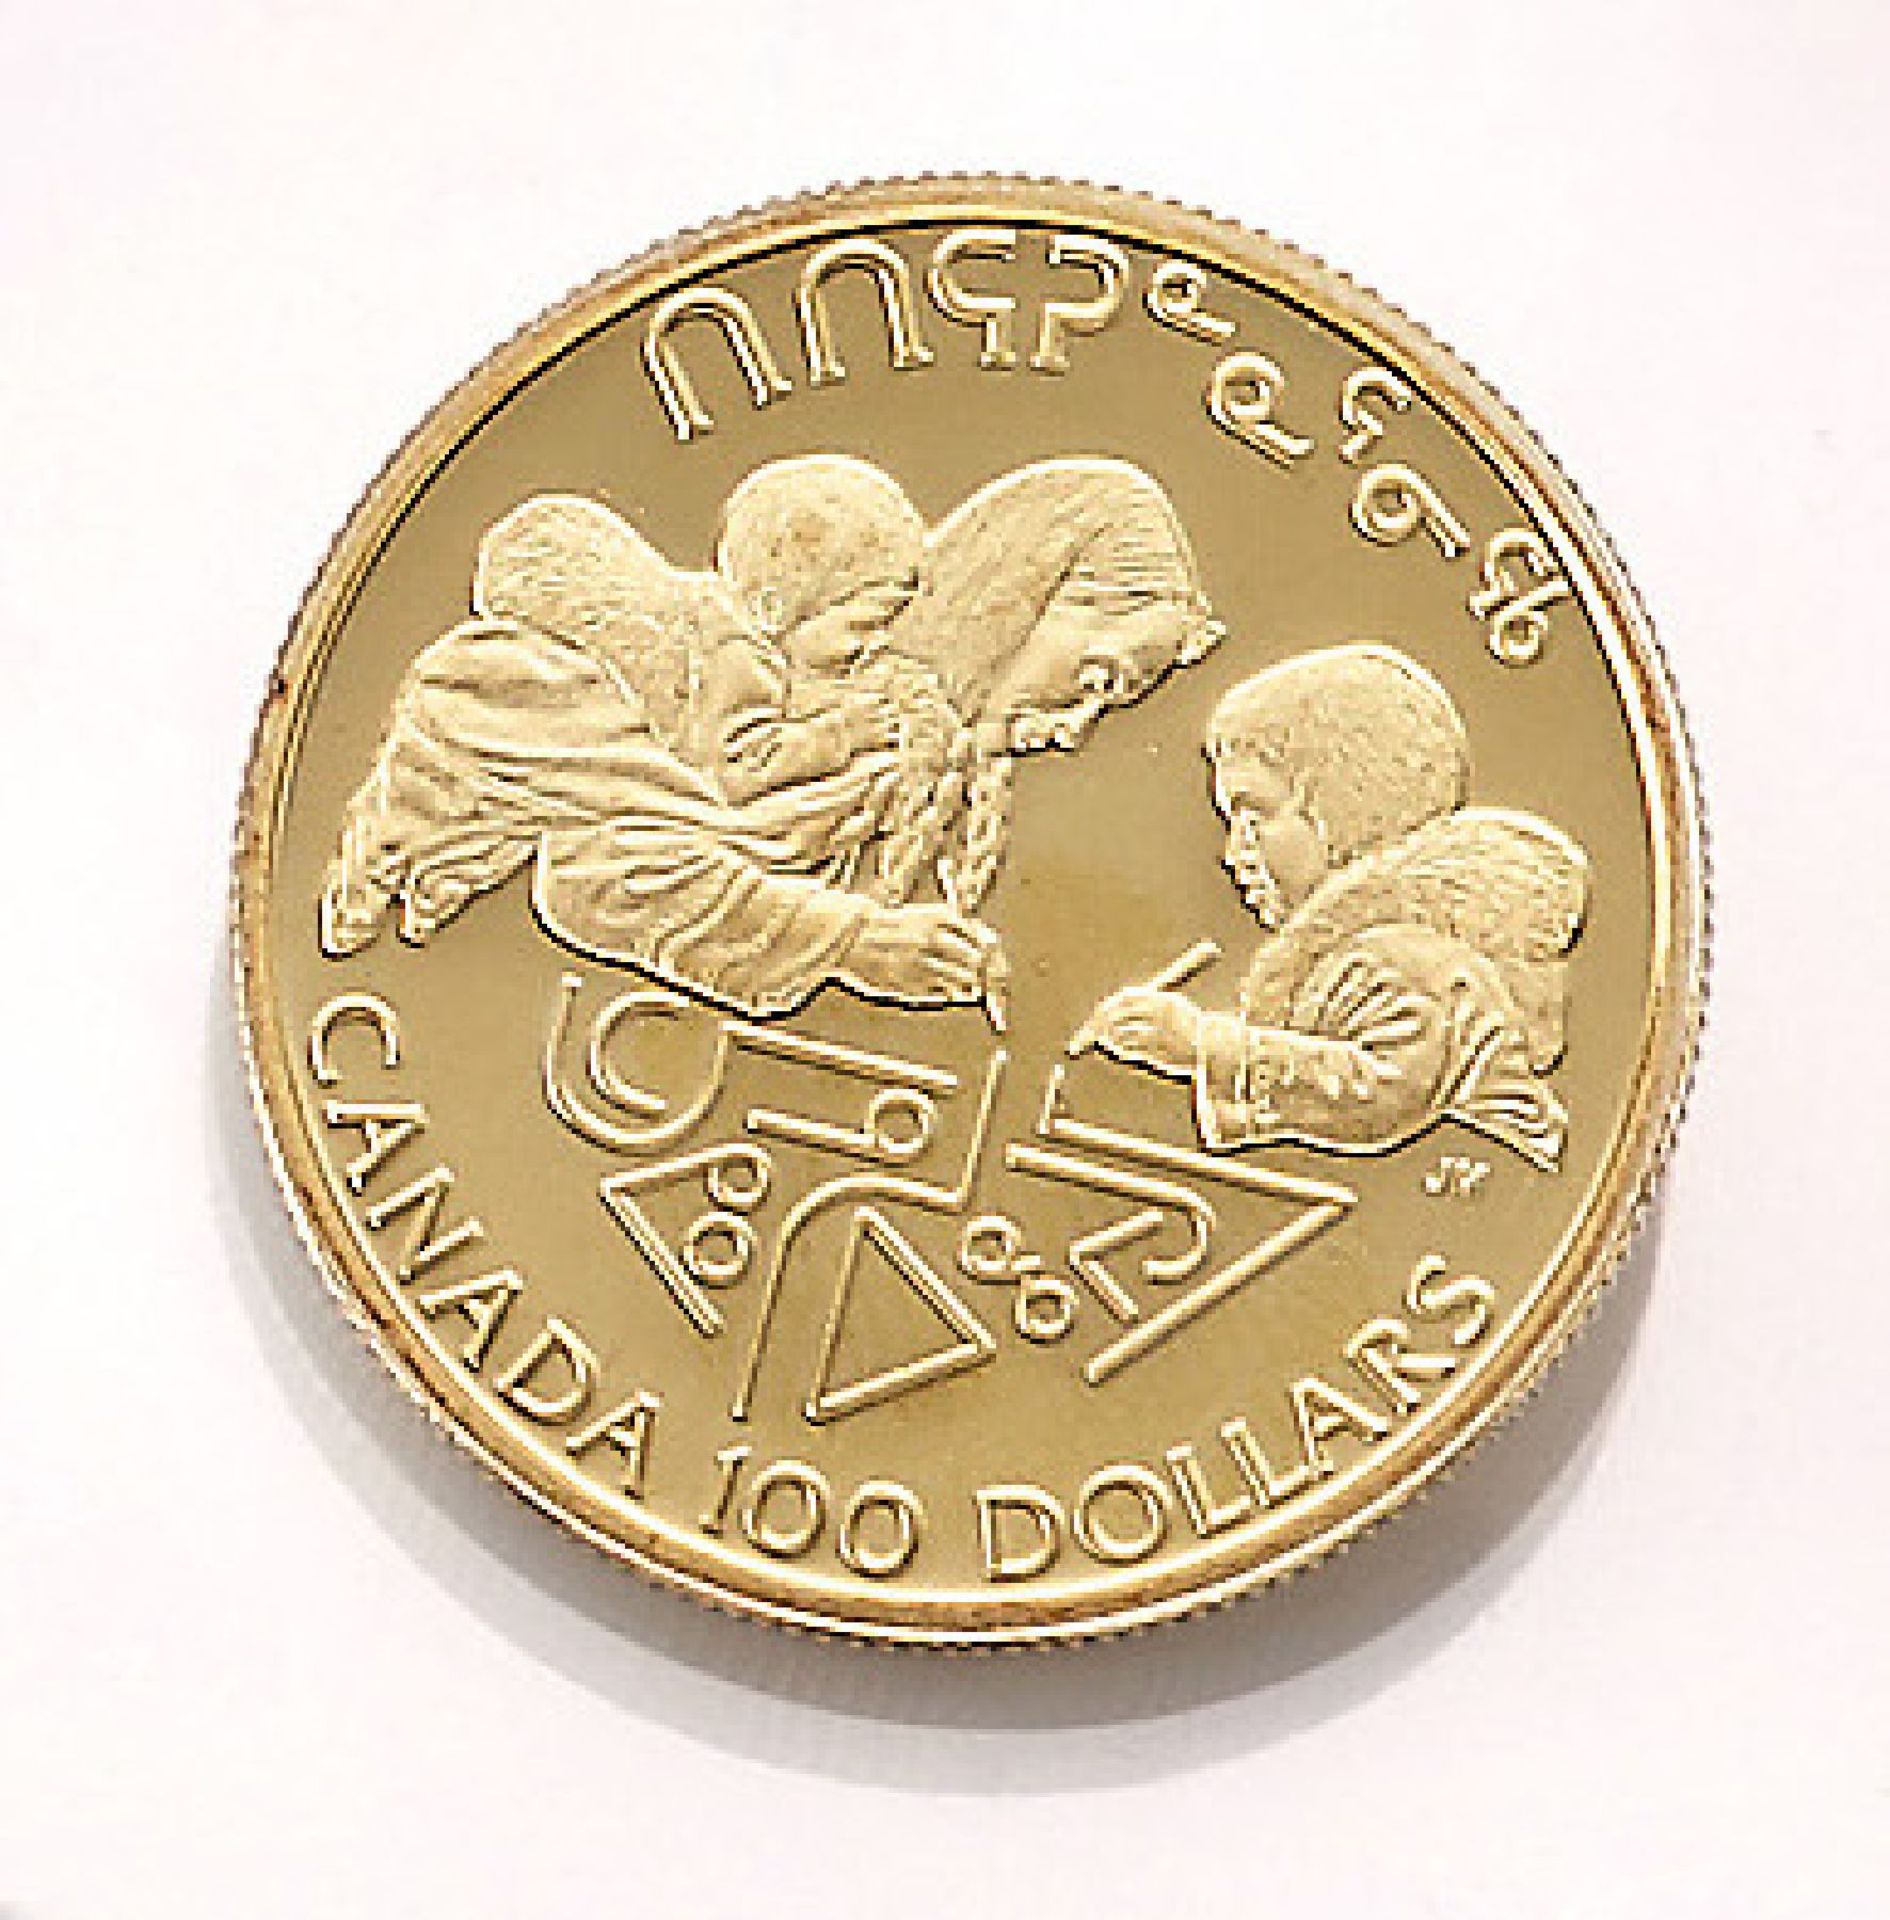 Goldmünze, 100 Dollars, Canada, 1990, Elizabeth II., Jahr der AlphabetisierungGold coin, 100